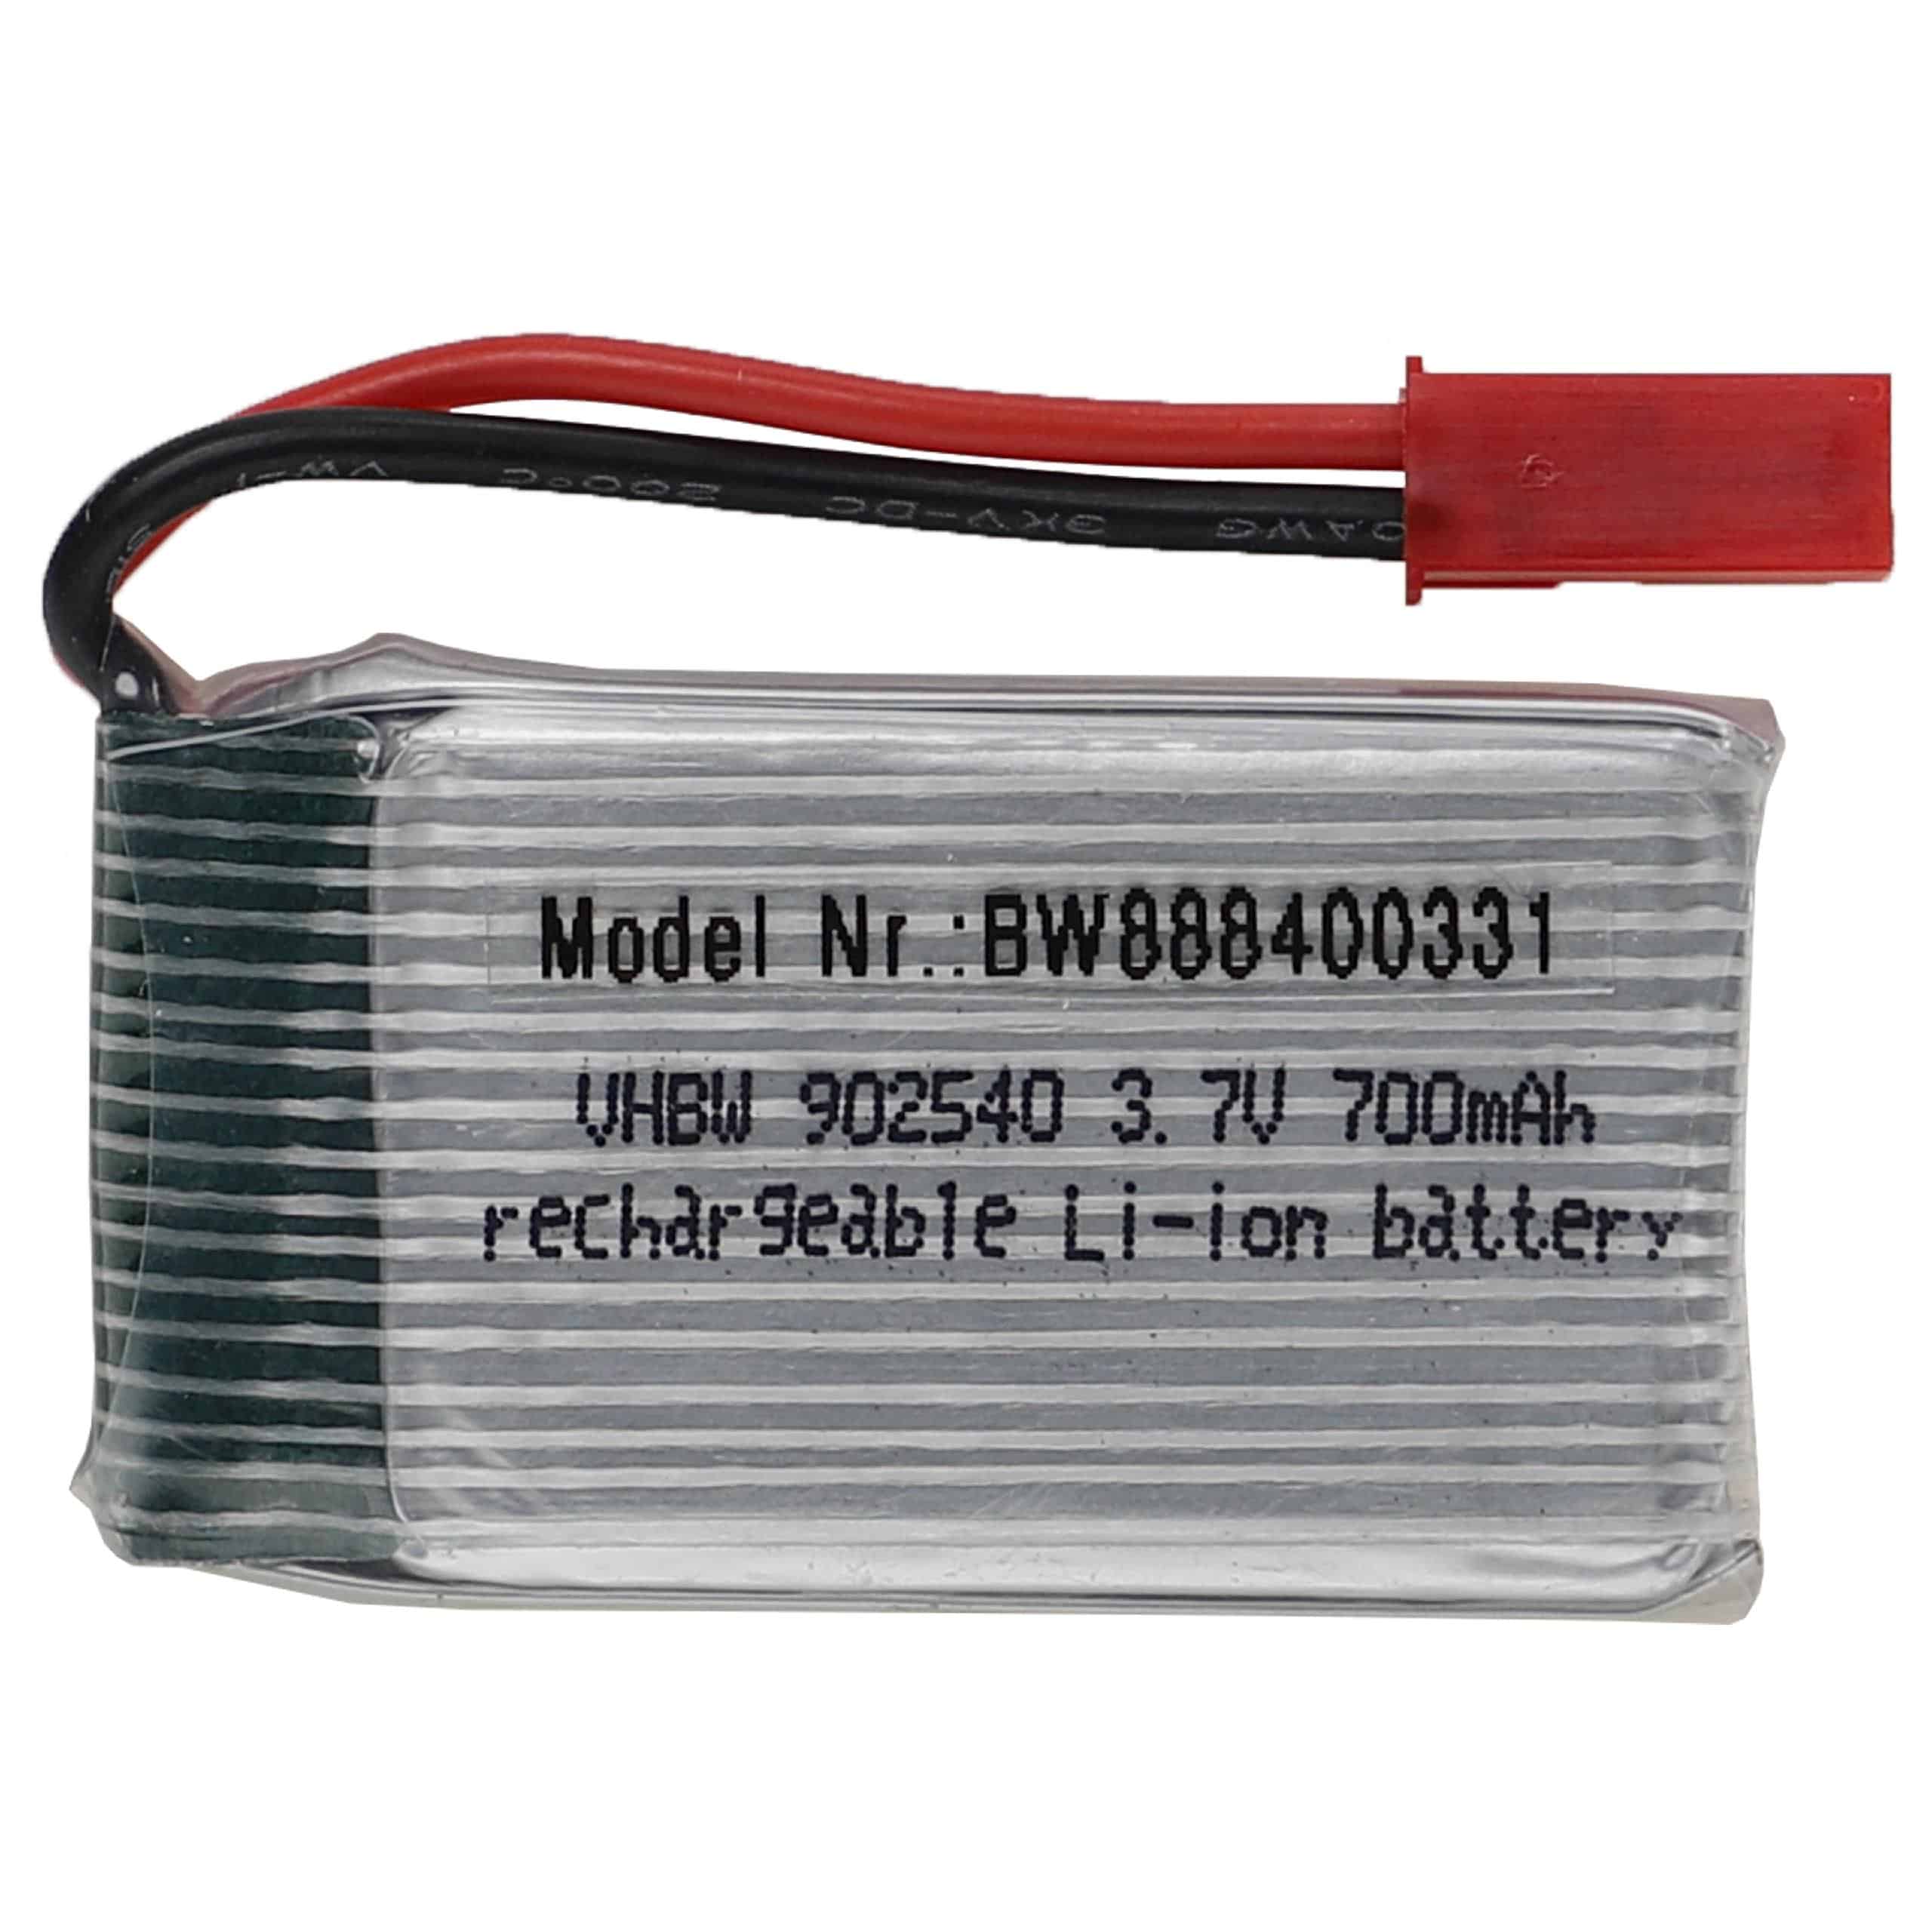 Batterie pour modèle radio-télécommandé - 700mAh 3,7V Li-polymère, BEC